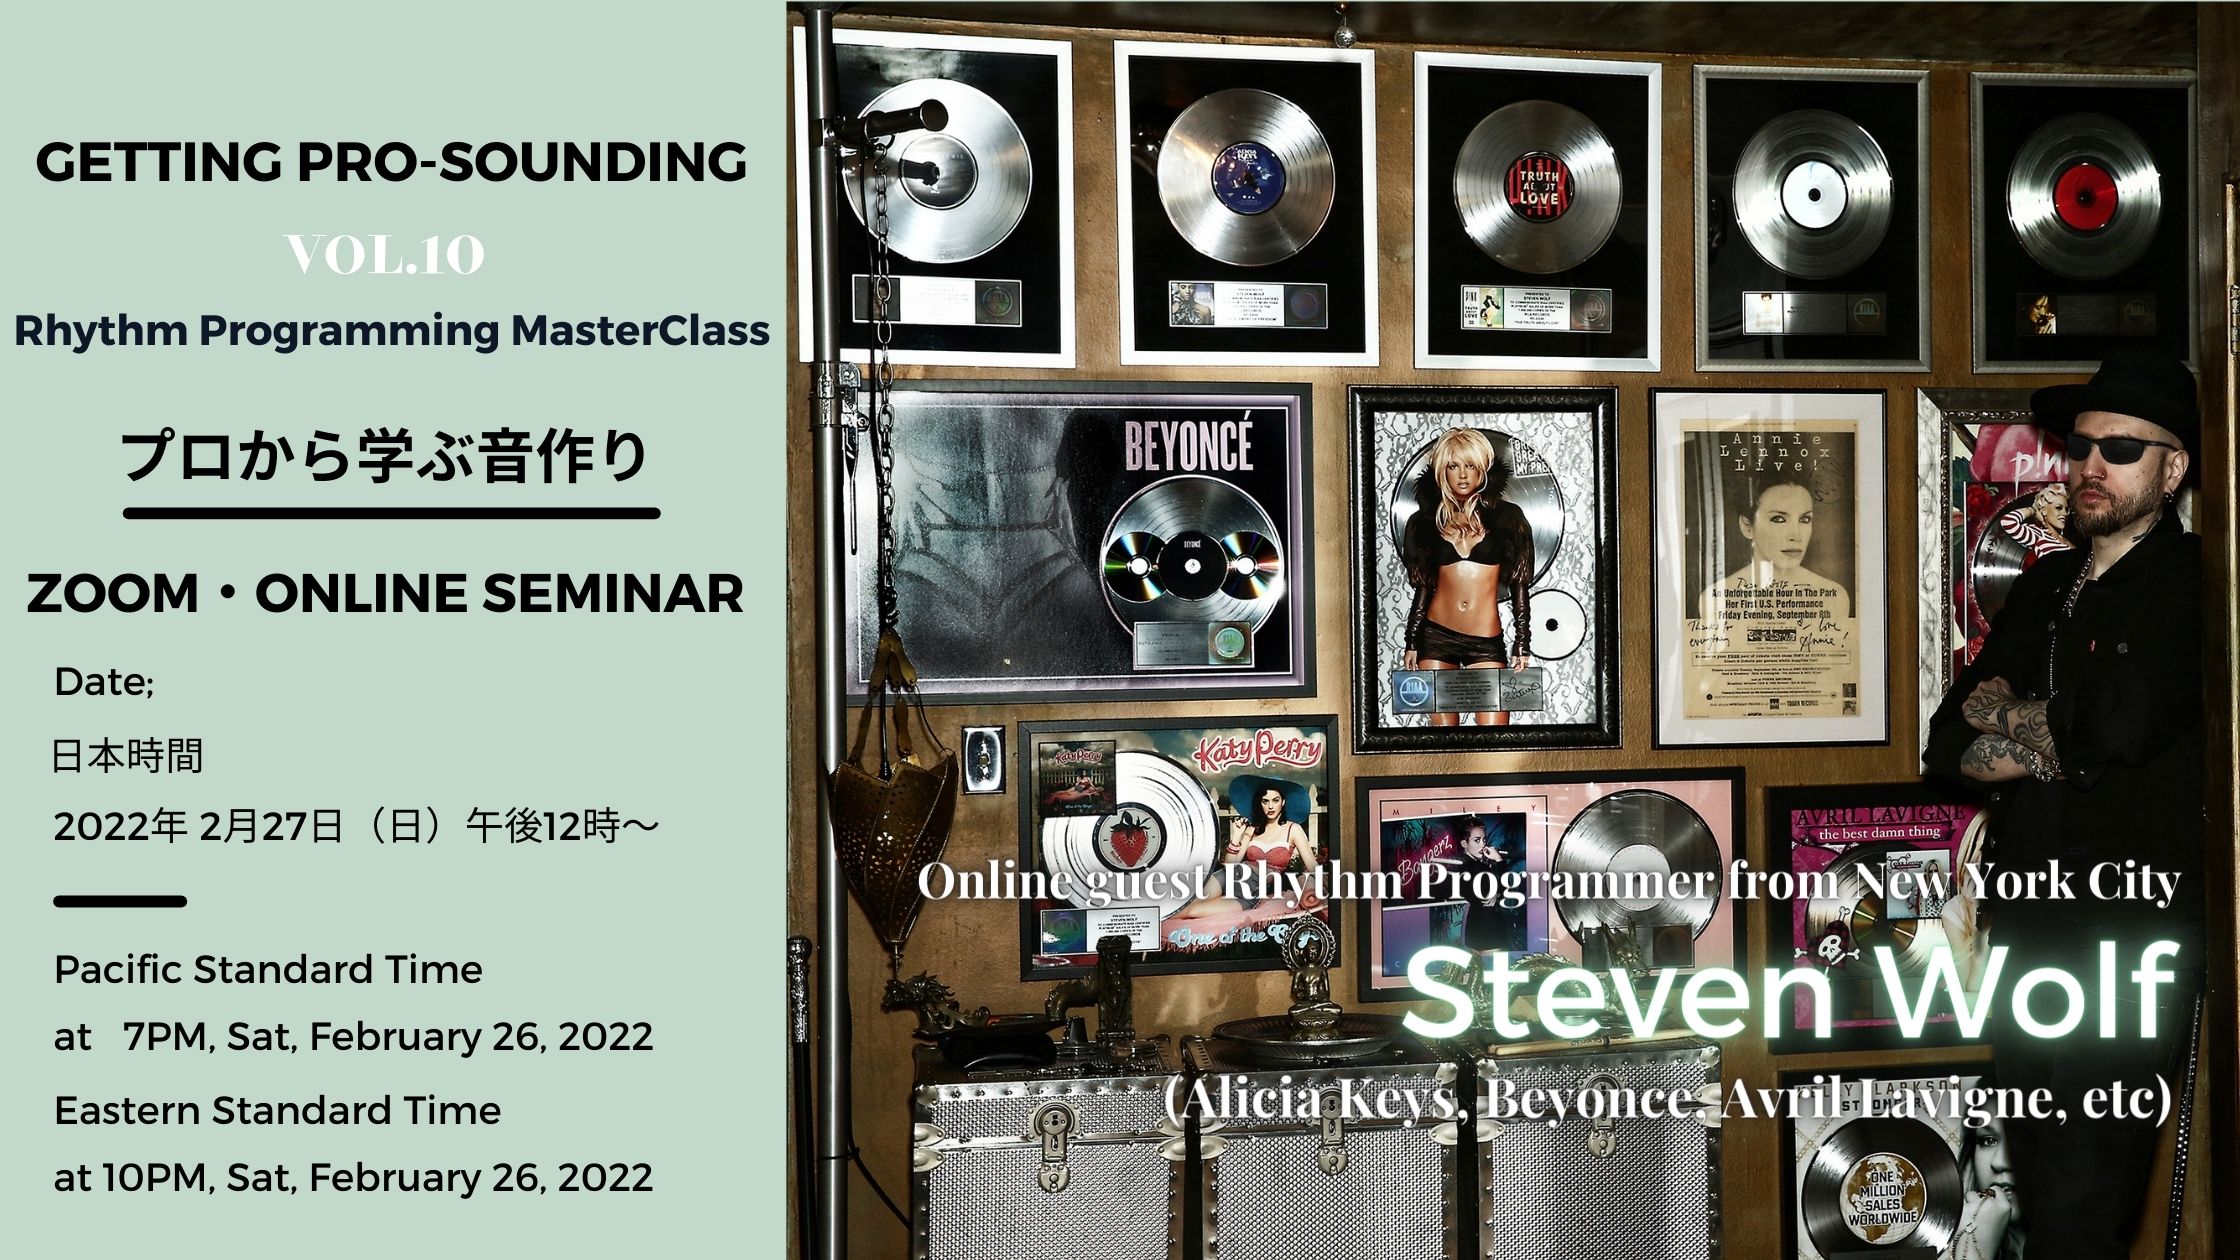 世界のトッププレイヤーから直接学ぶ オンライン音楽講座『プロから学ぶ音作り』Vol.10 Rhythm Programming MasterClass with Steven Wolf